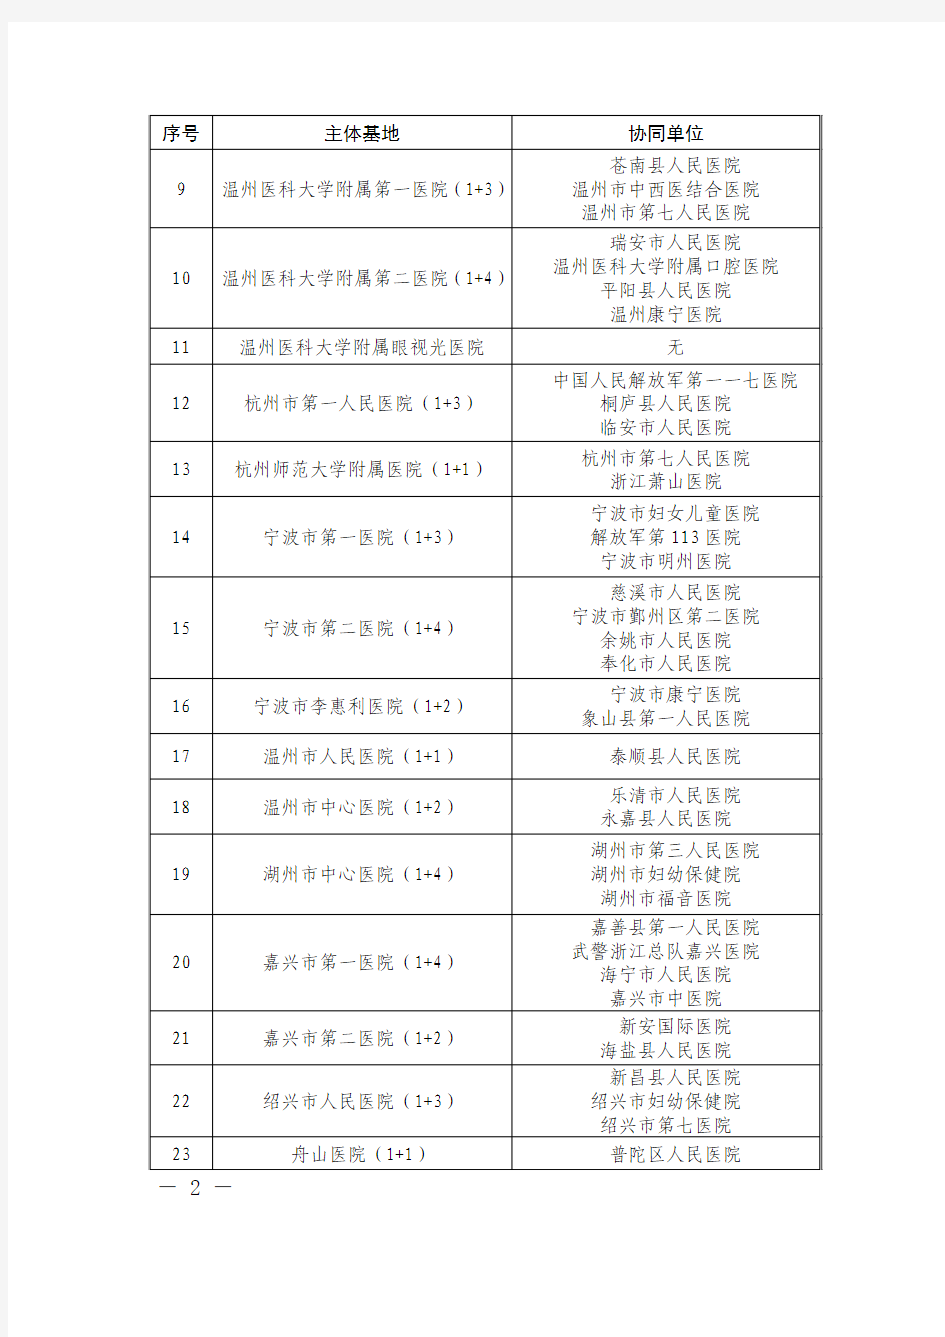 浙江省住院医师规范化培训基地联合体名单